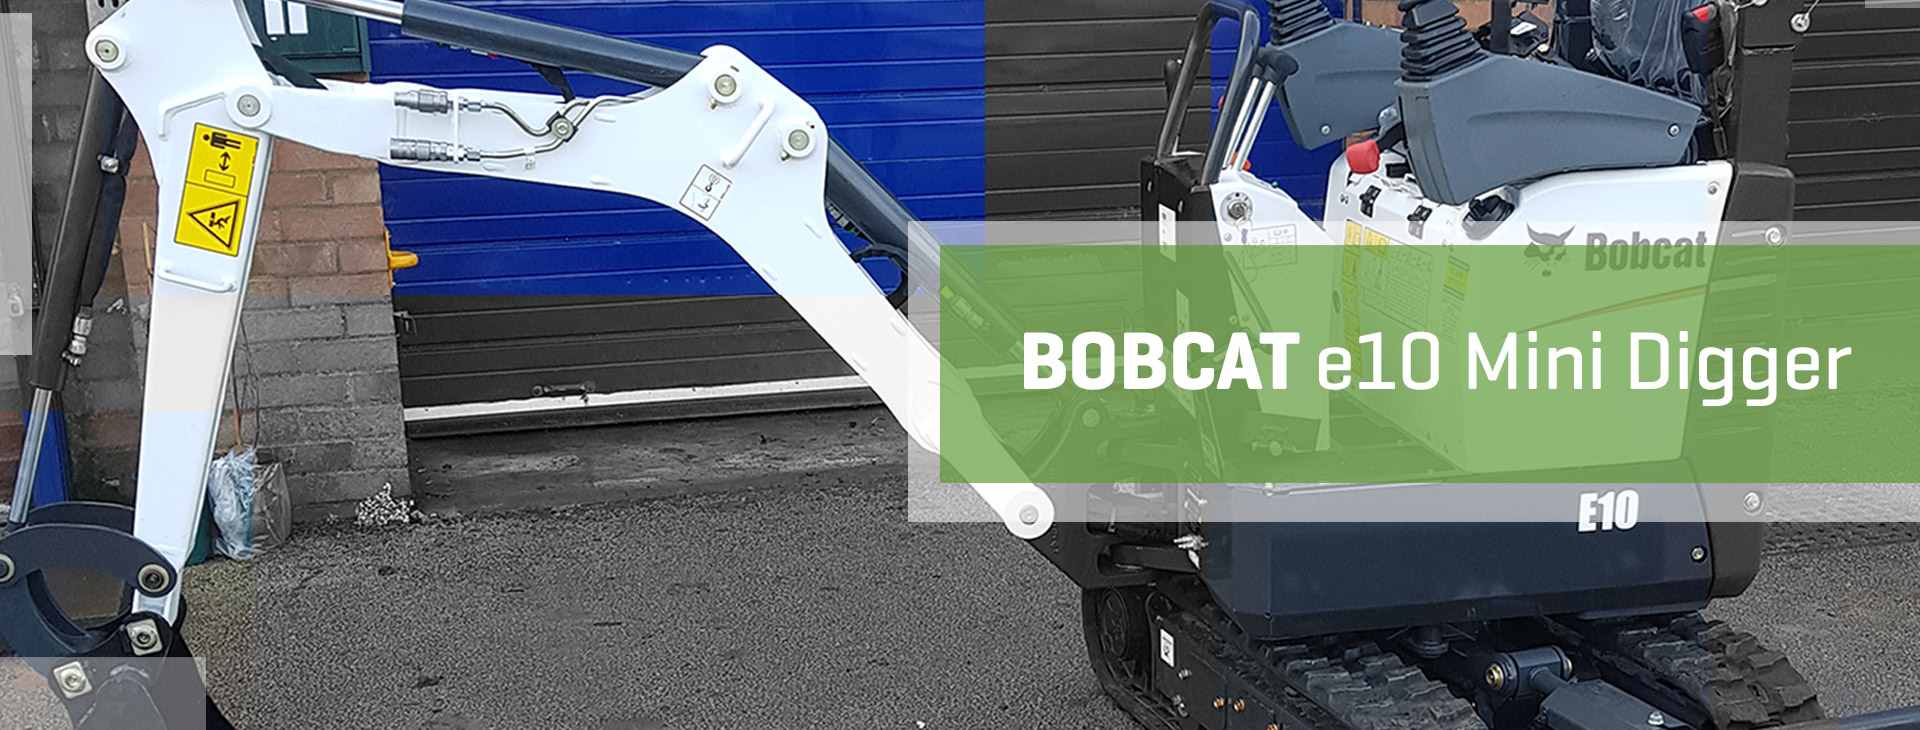 Bobcat E10 Operator Manual